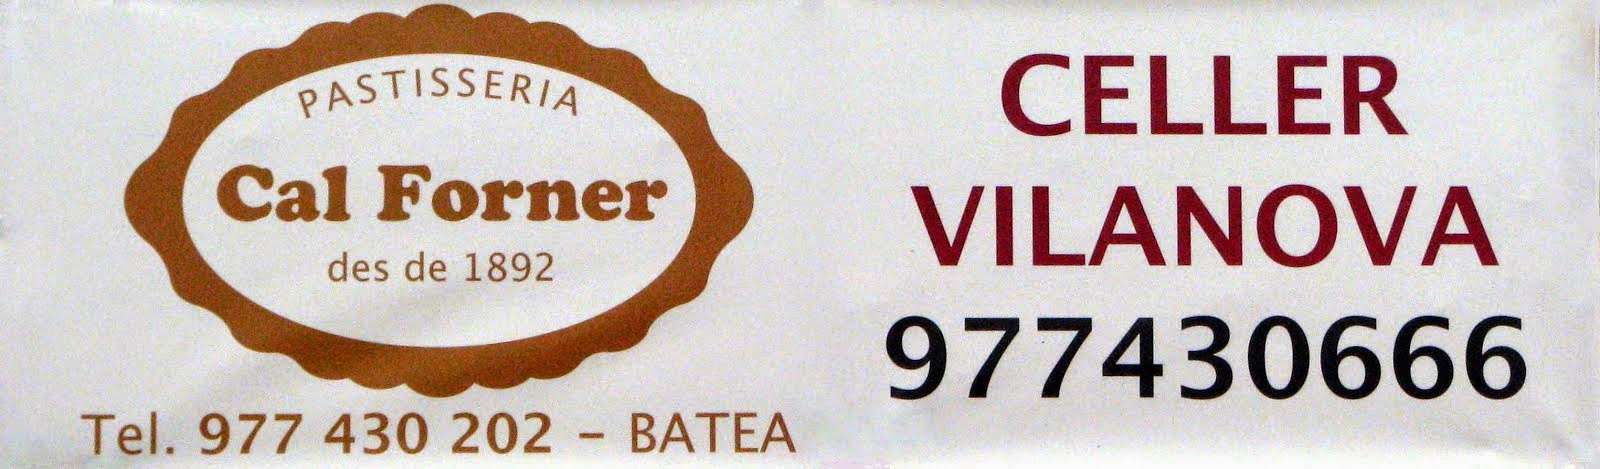 Celler Vilanova